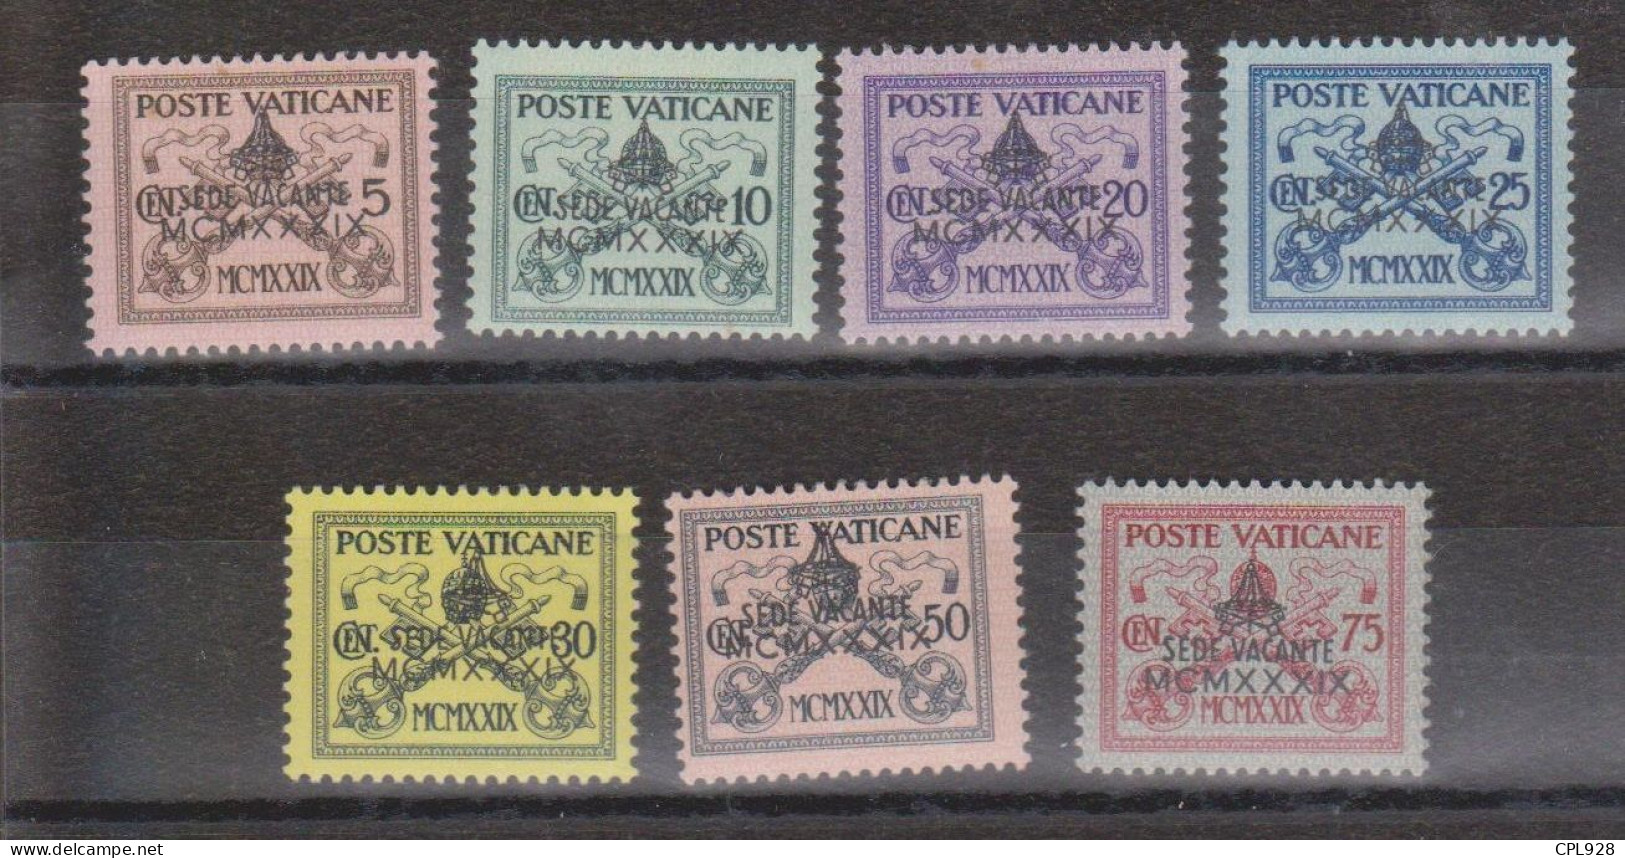 Vatican N° 85A à 85G Avec Charnières - Unused Stamps